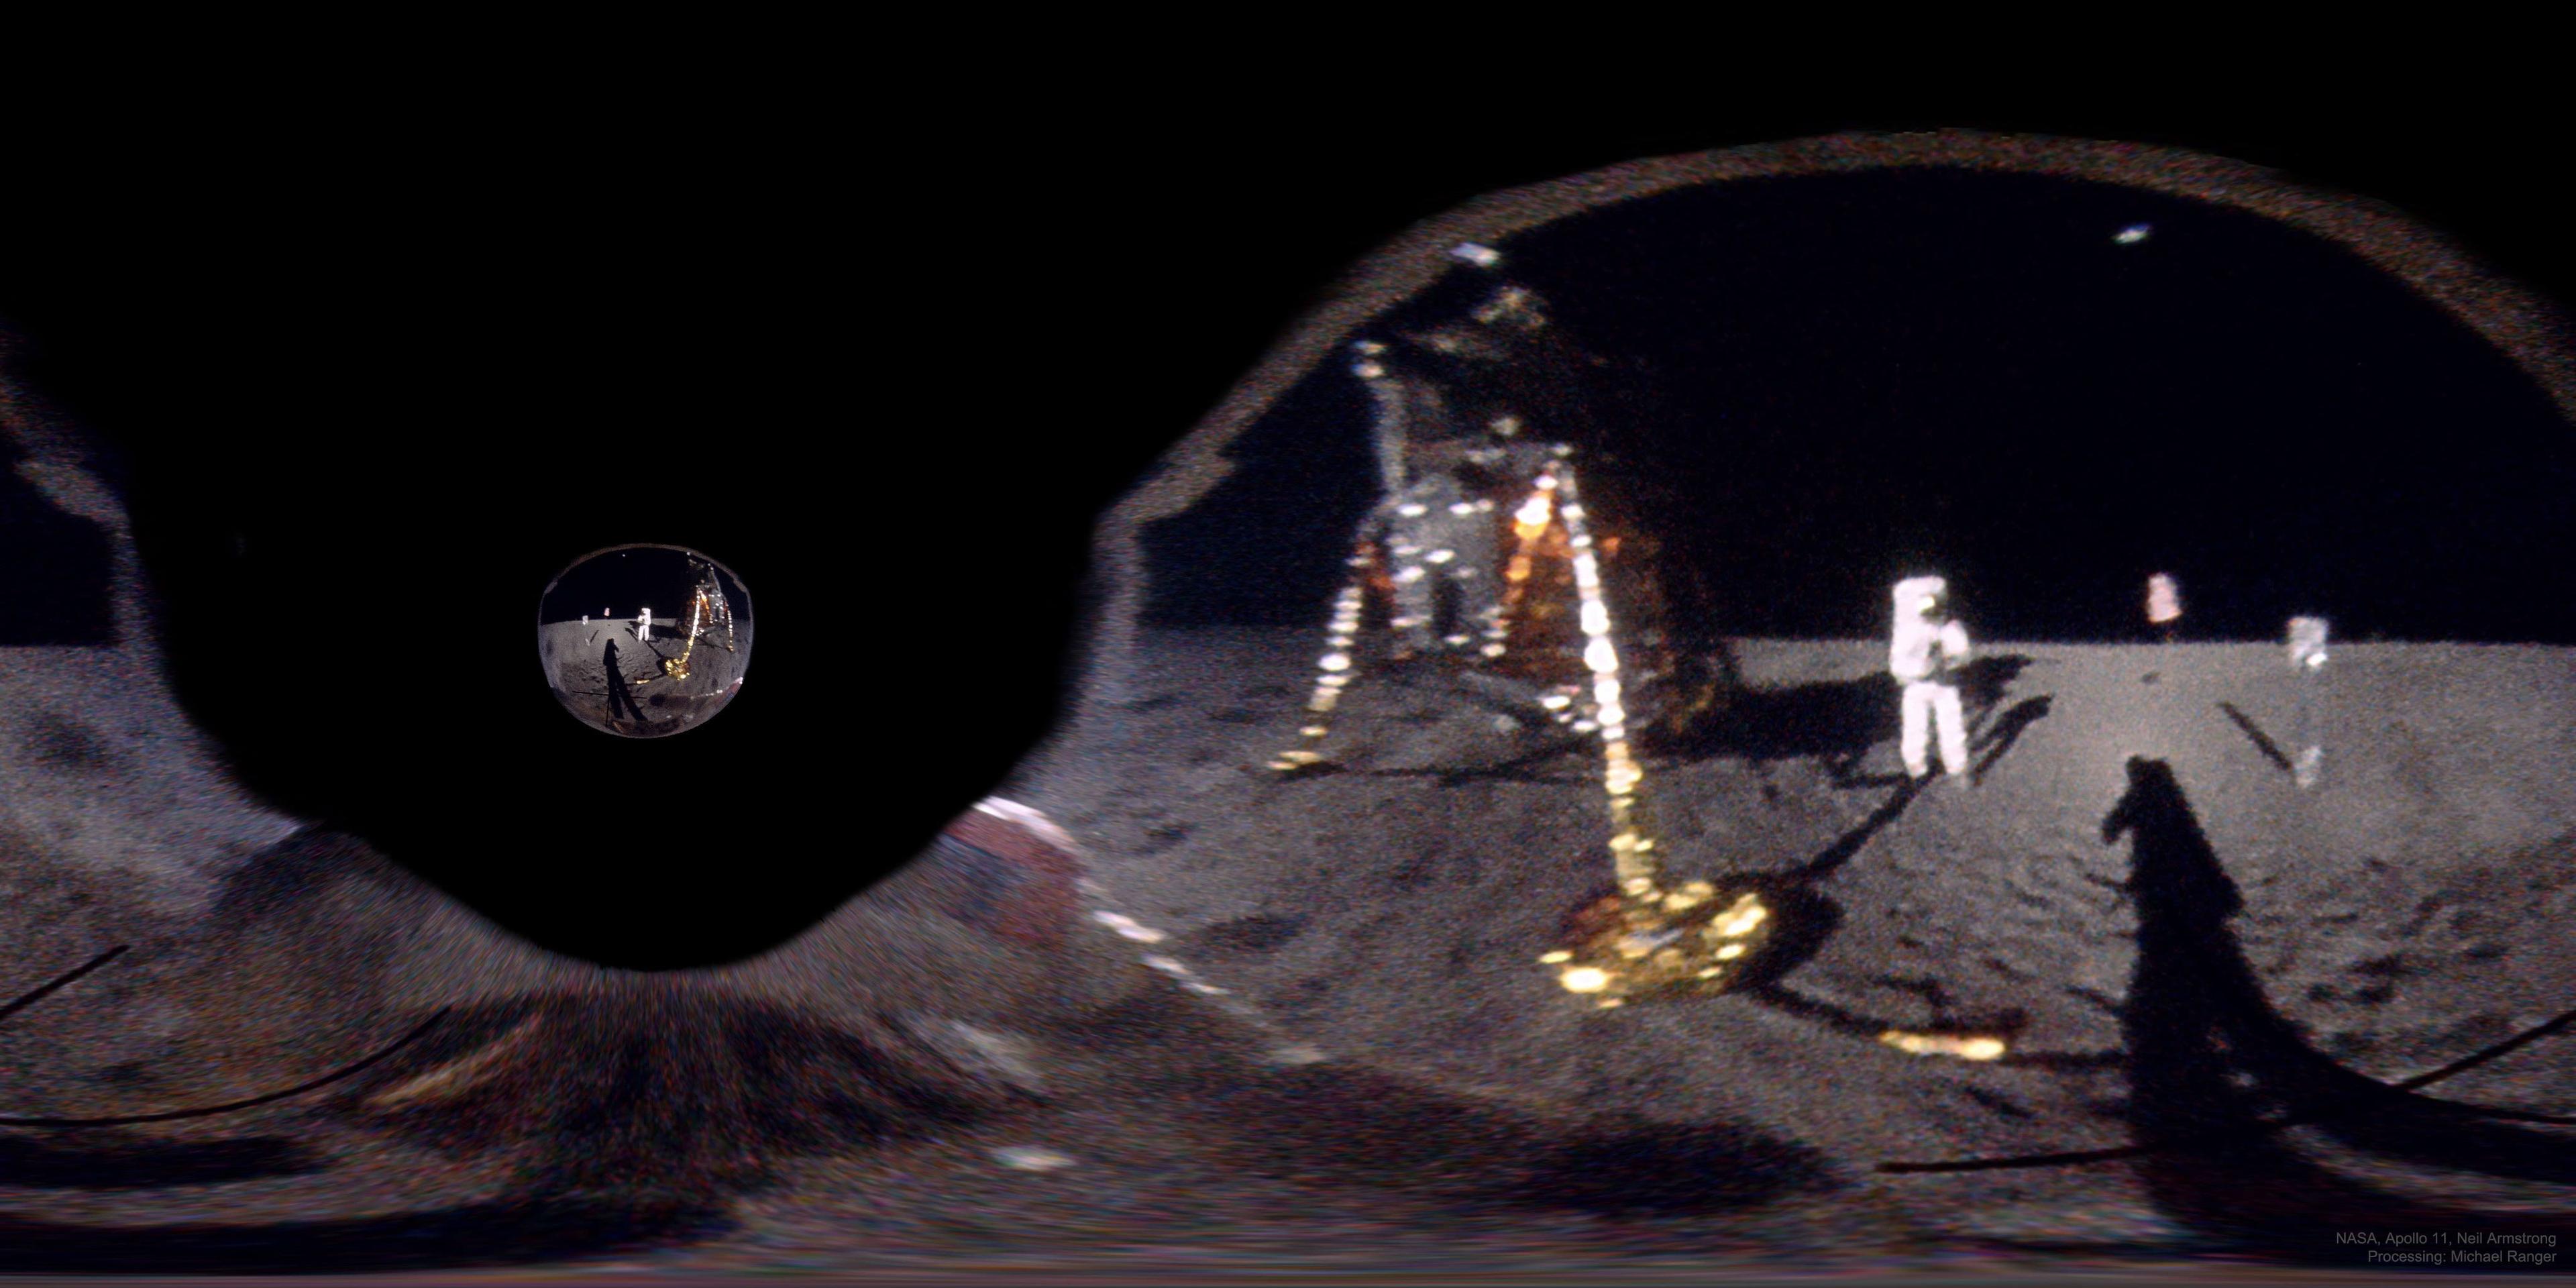 نيل أرمسترونگ على القمر في 1969 يلتقط صورة لـ ألدرِن، حيث صنعت الصورة من انعكاس أرمسترونگ على مقدّمة خوذة ألدرن.